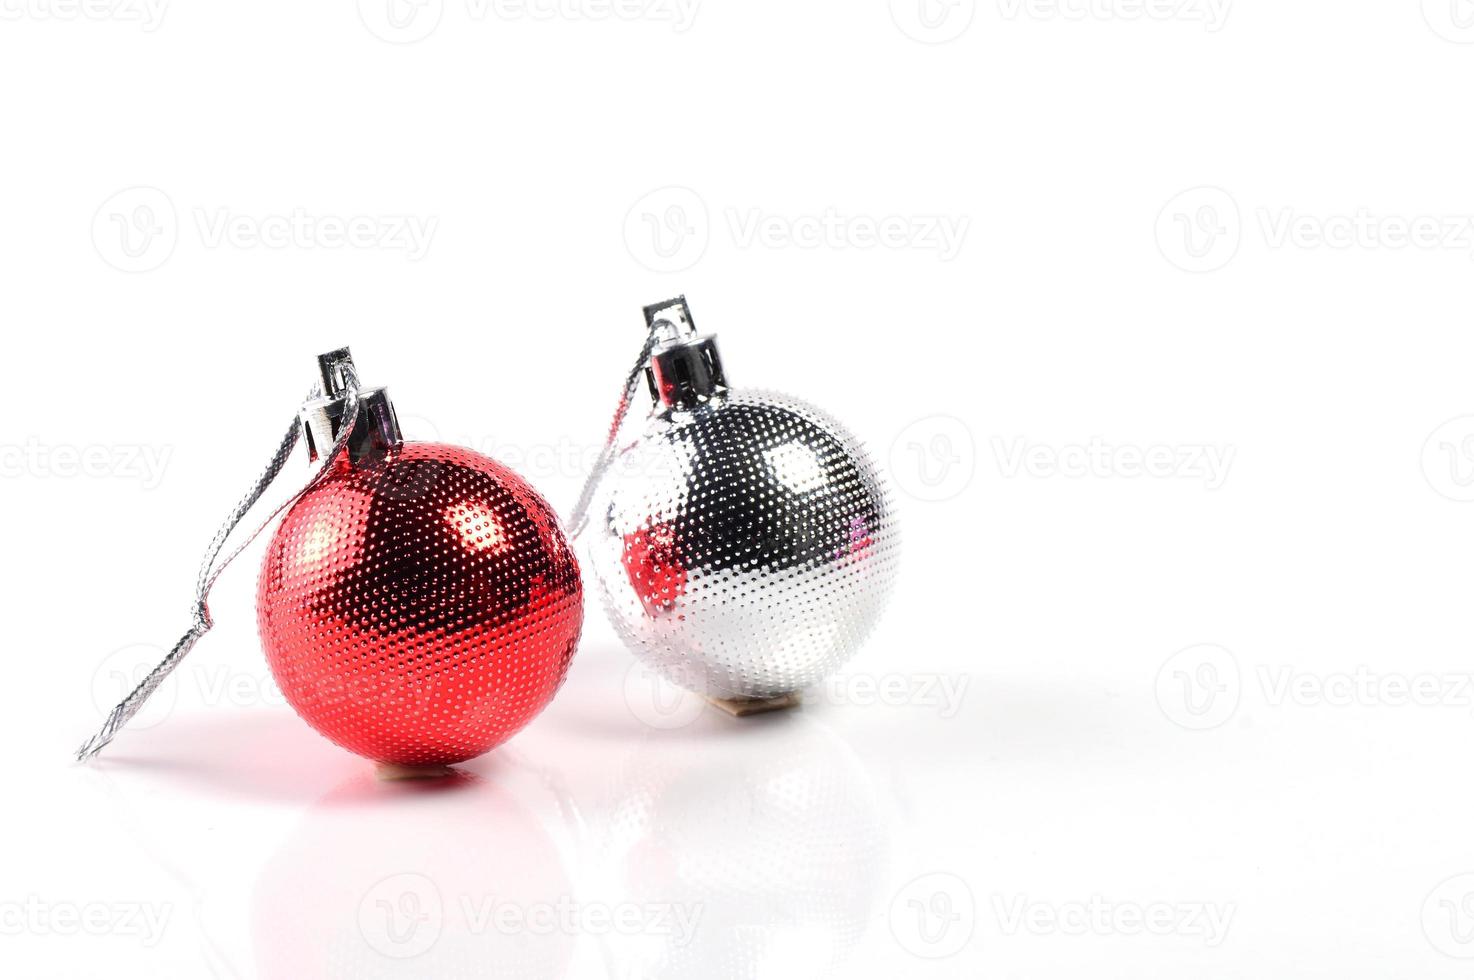 kerstballen met ornamenten op een witte achtergrond. foto